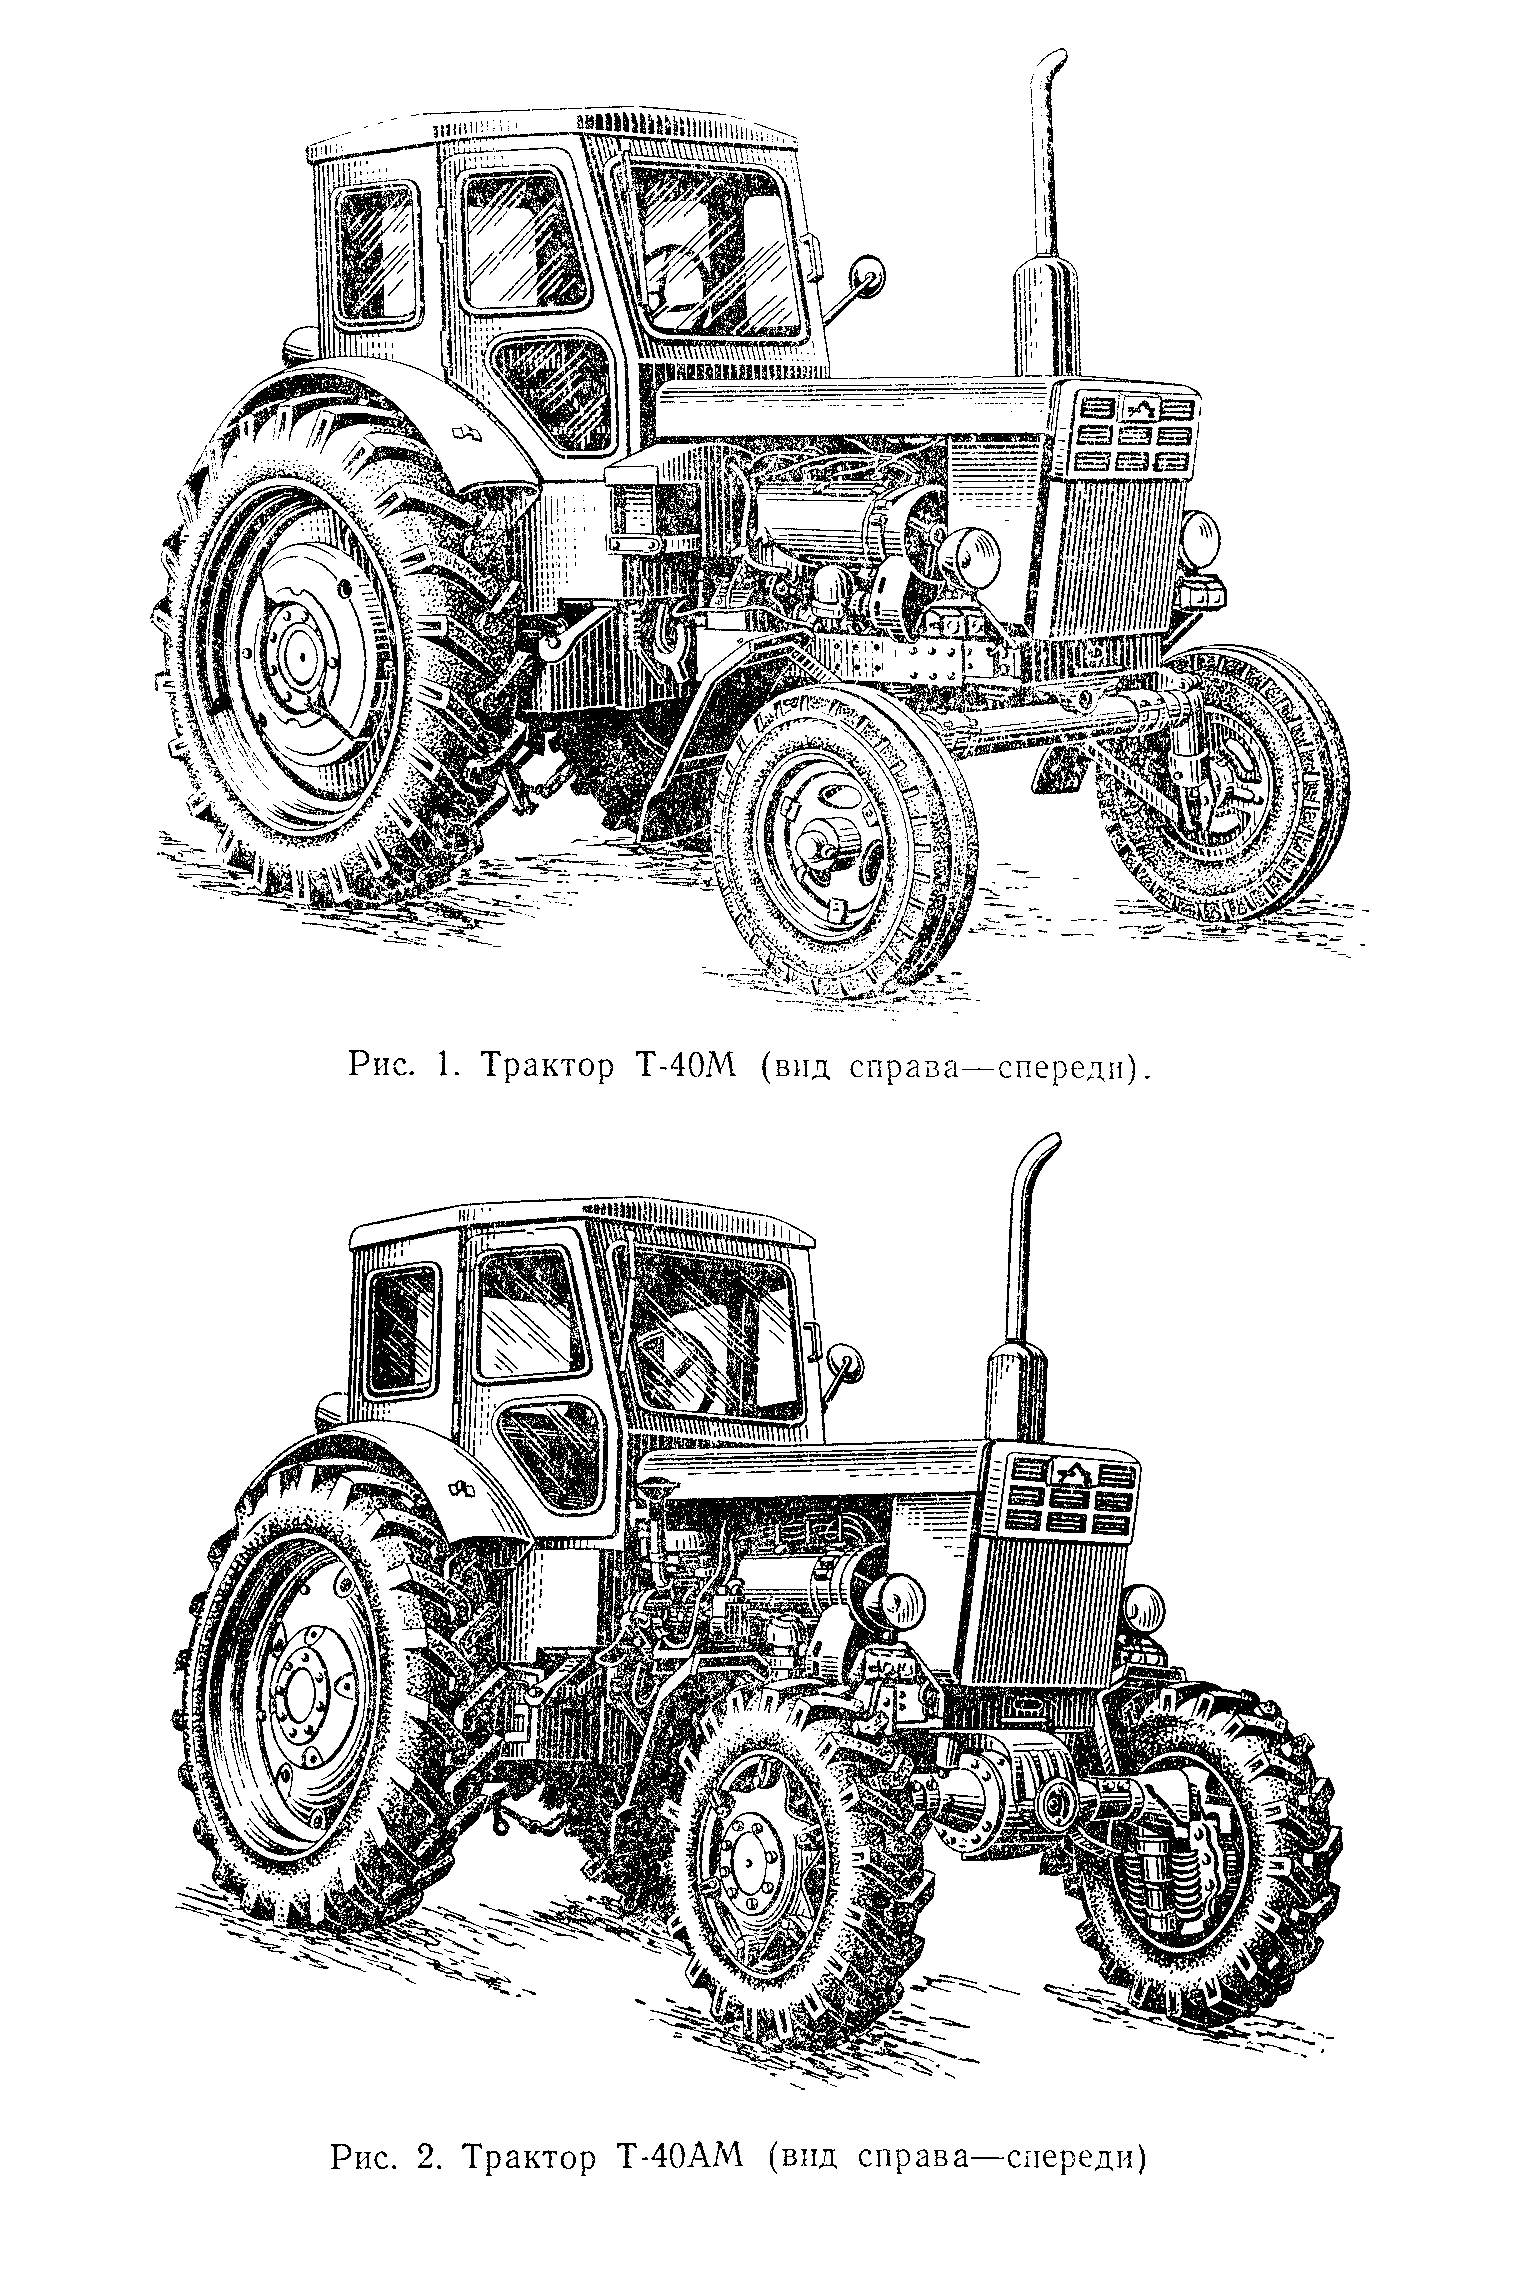 Все о тракторе т-40 — описание, характеристики и возможности